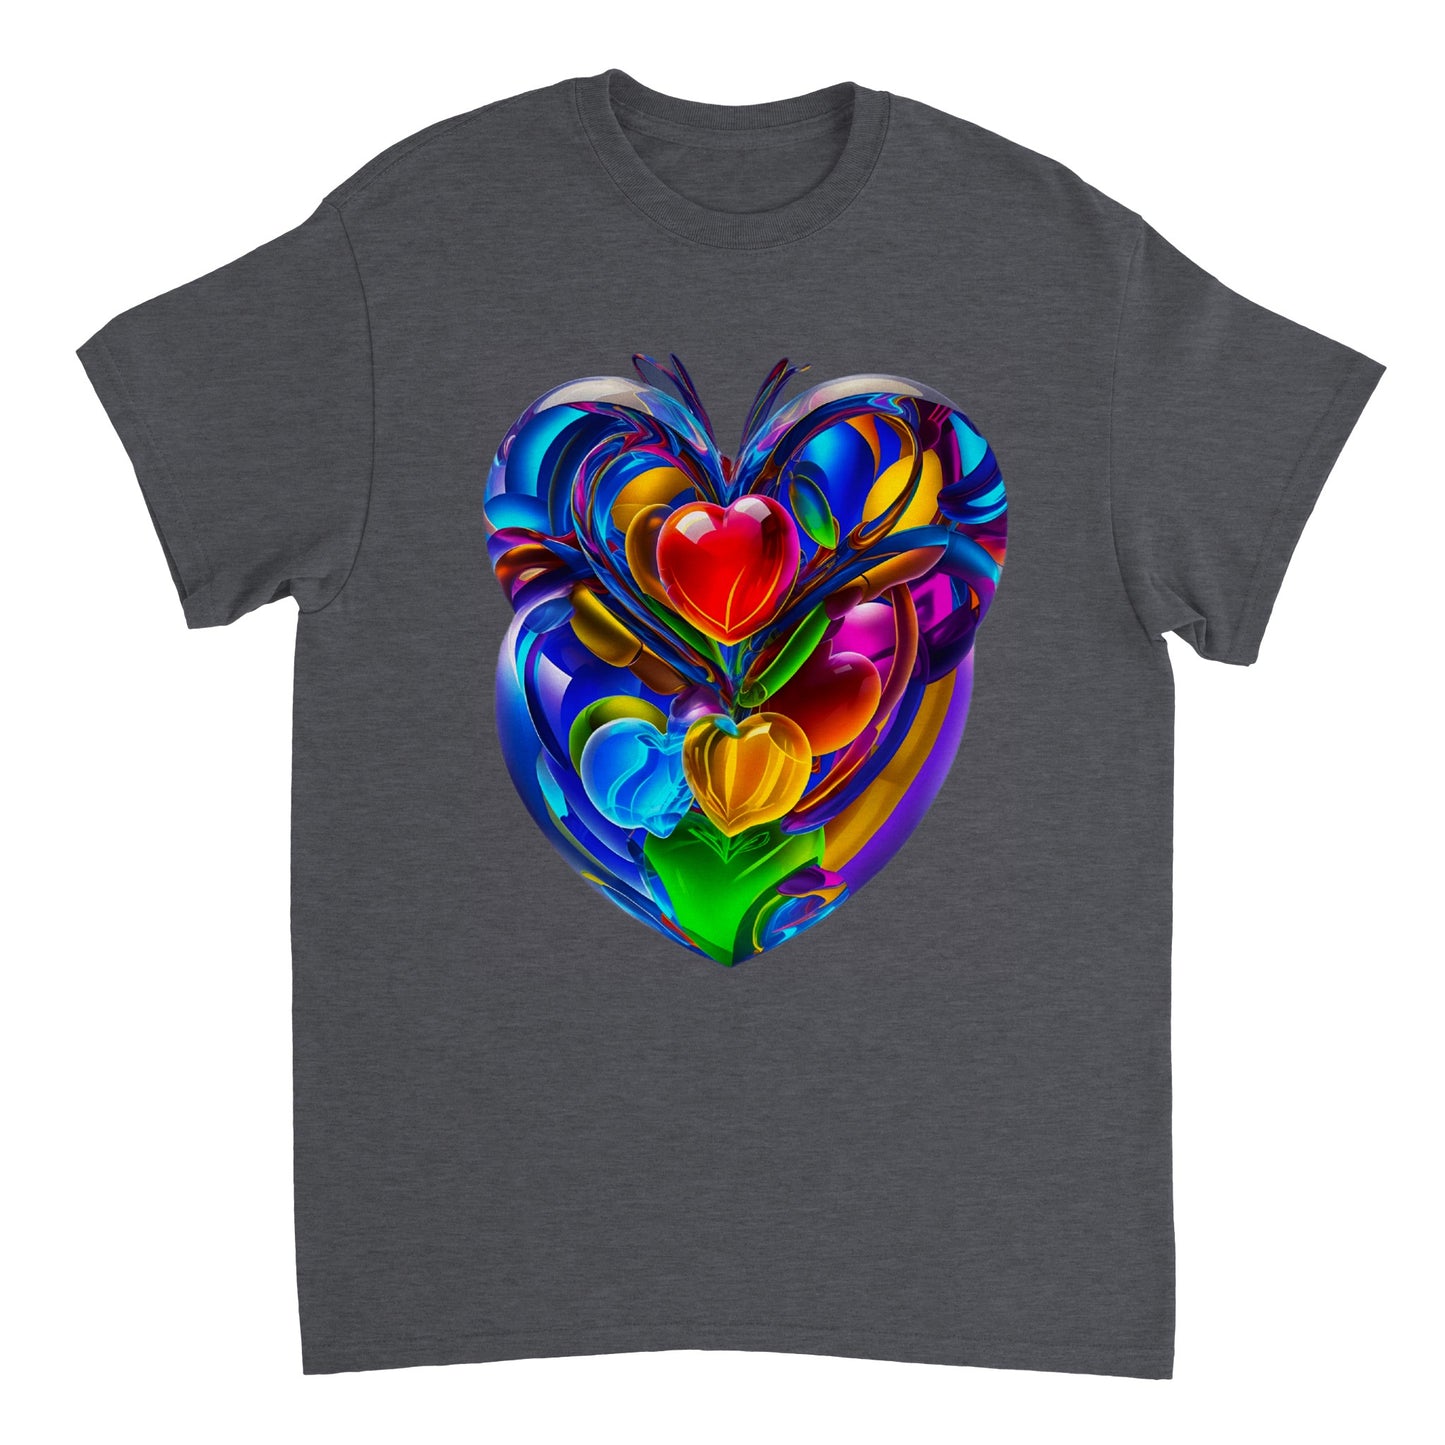 Love Heart - Heavyweight Unisex Crewneck T-shirt 7